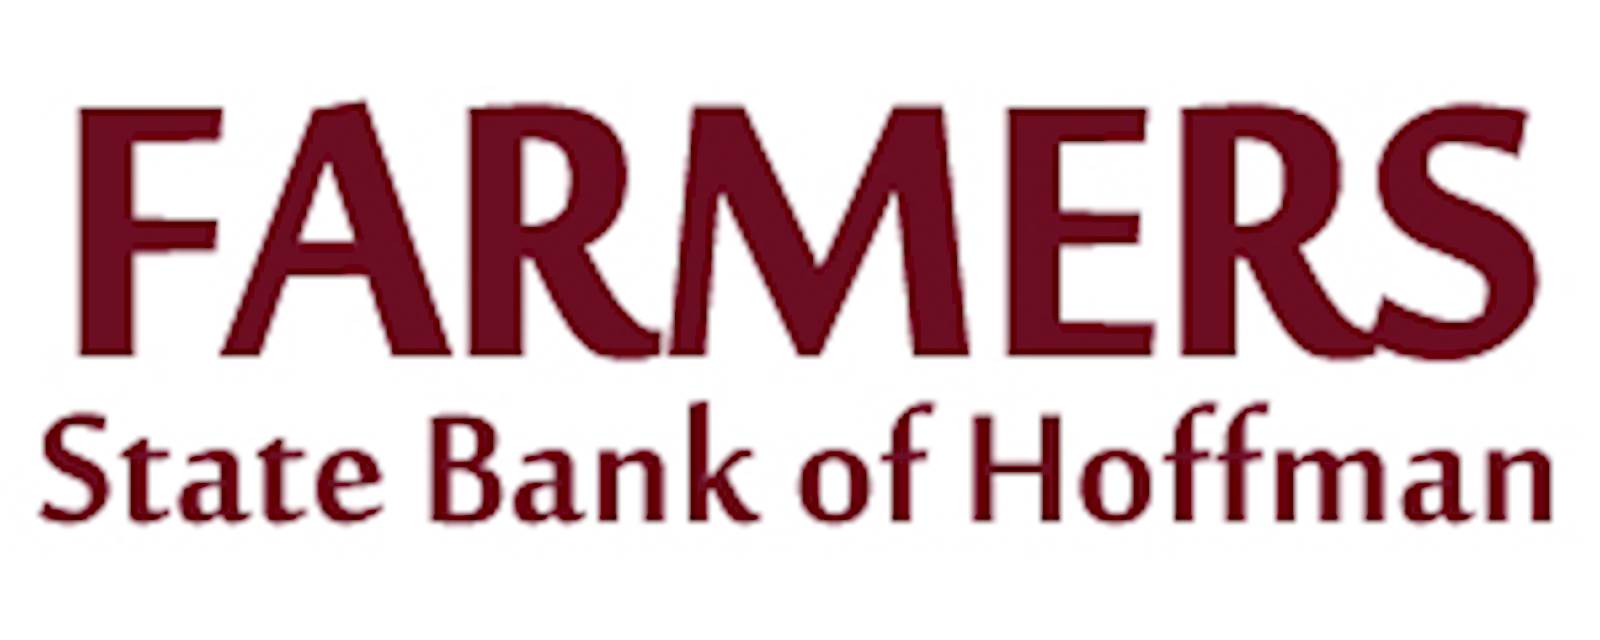 Farmers State Bank of Hoffman.jpg